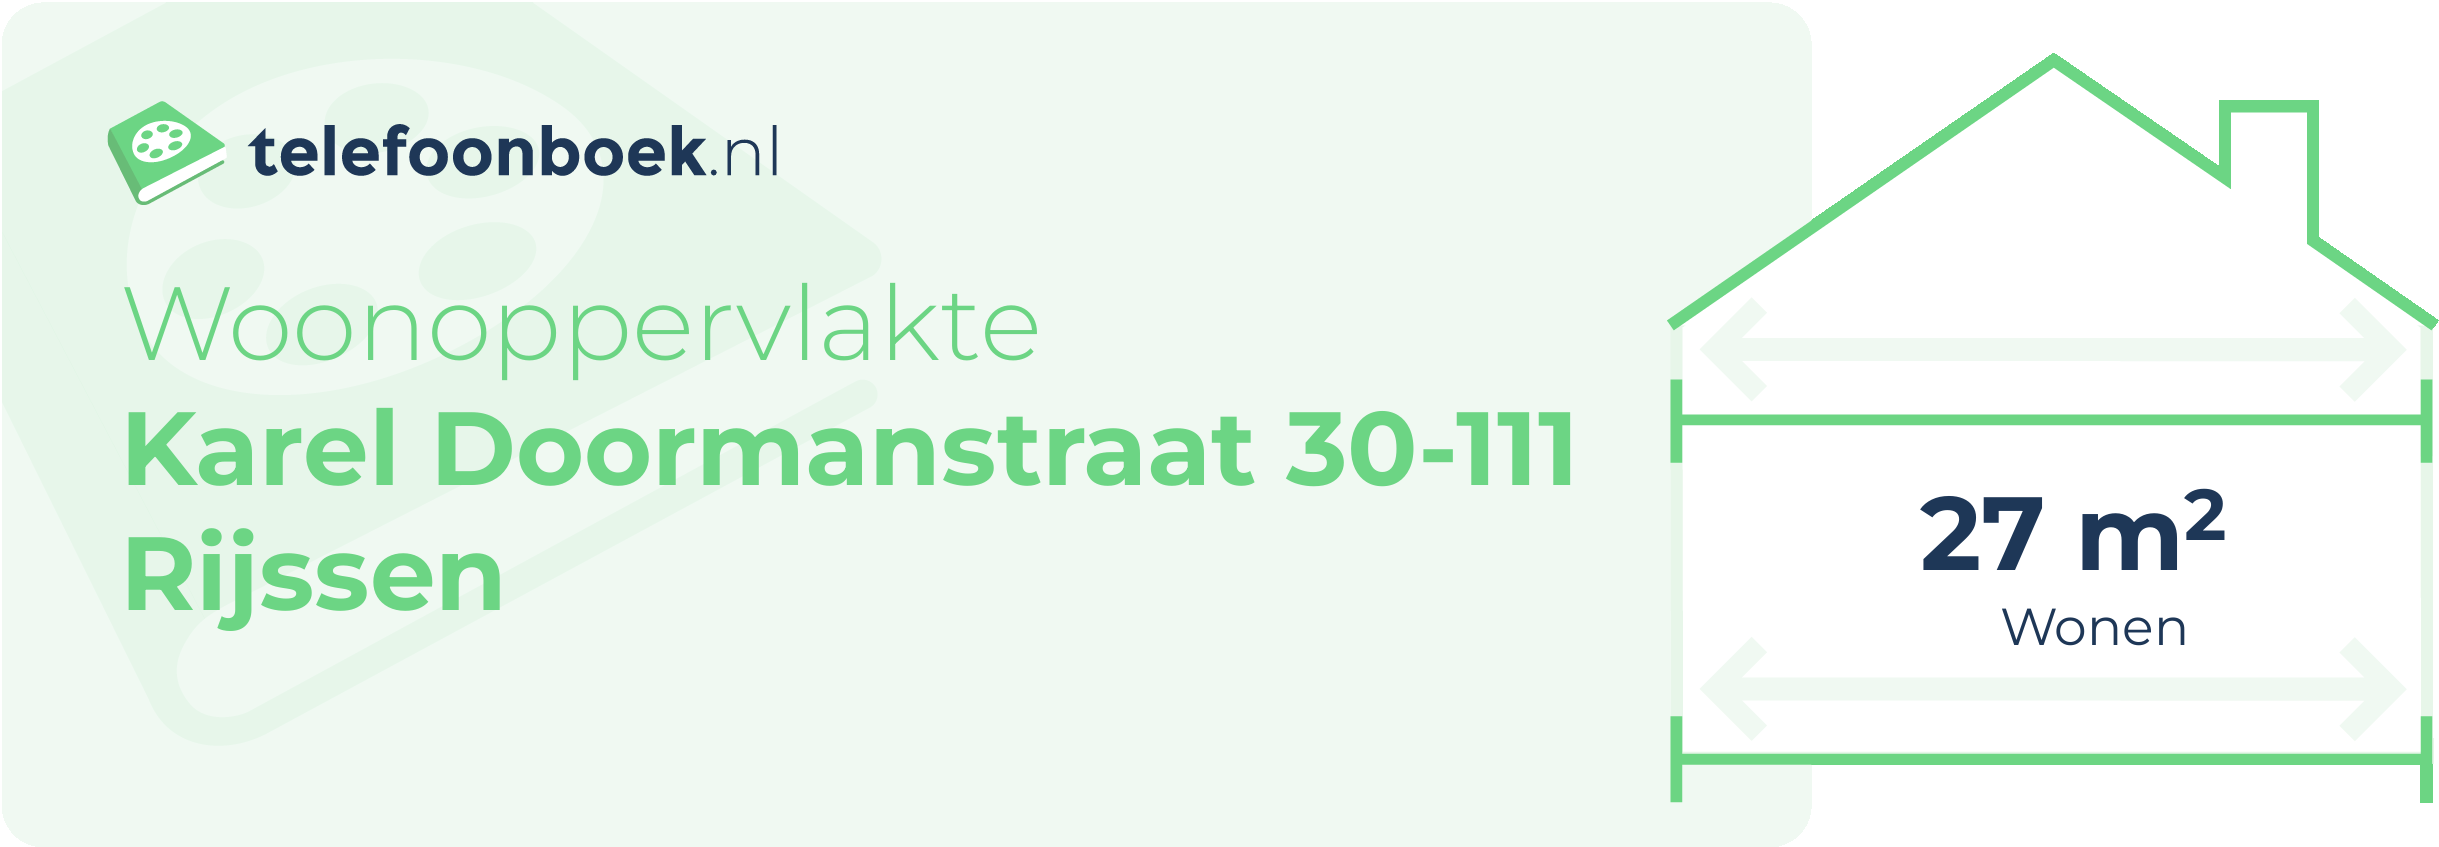 Woonoppervlakte Karel Doormanstraat 30-111 Rijssen